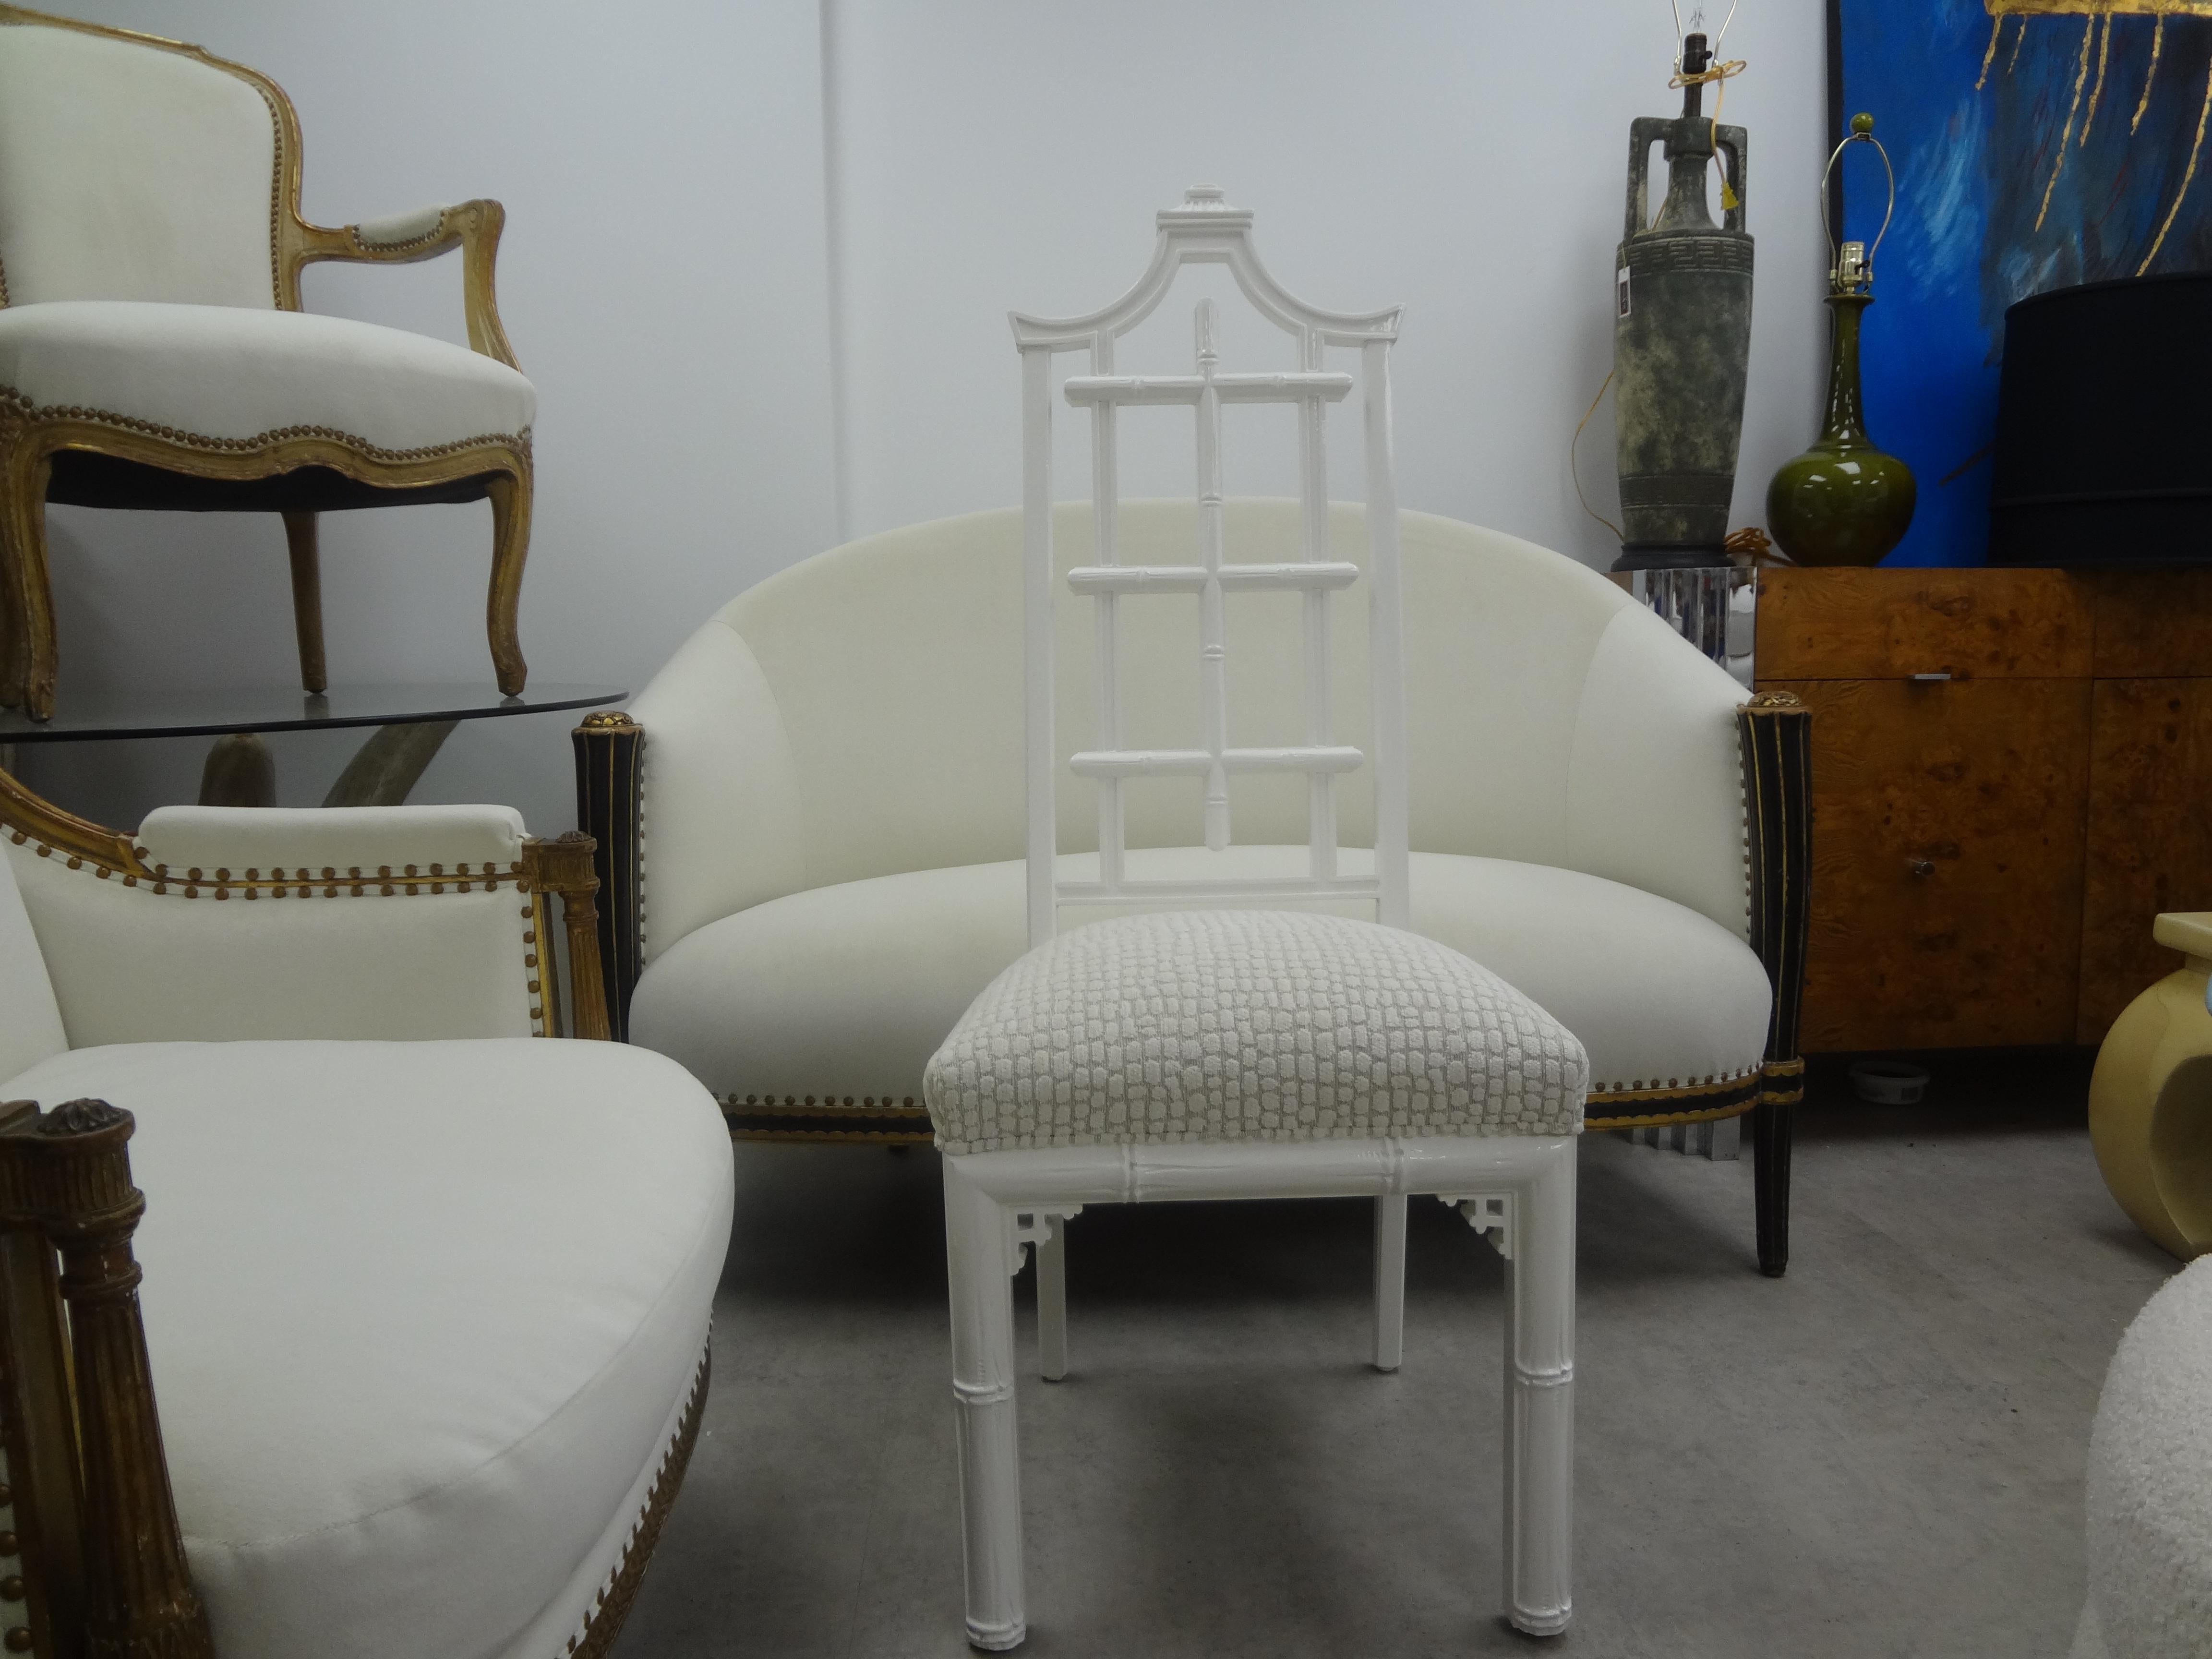 Chaise Vintage chinoise de style Chippendale dans une superbe finition laquée blanche. Cette chaise pagode a de beaux détails et a été tapissée professionnellement dans un velours blanc. Cette chaise, chaise d'appoint, chaise de bureau ou chaise de